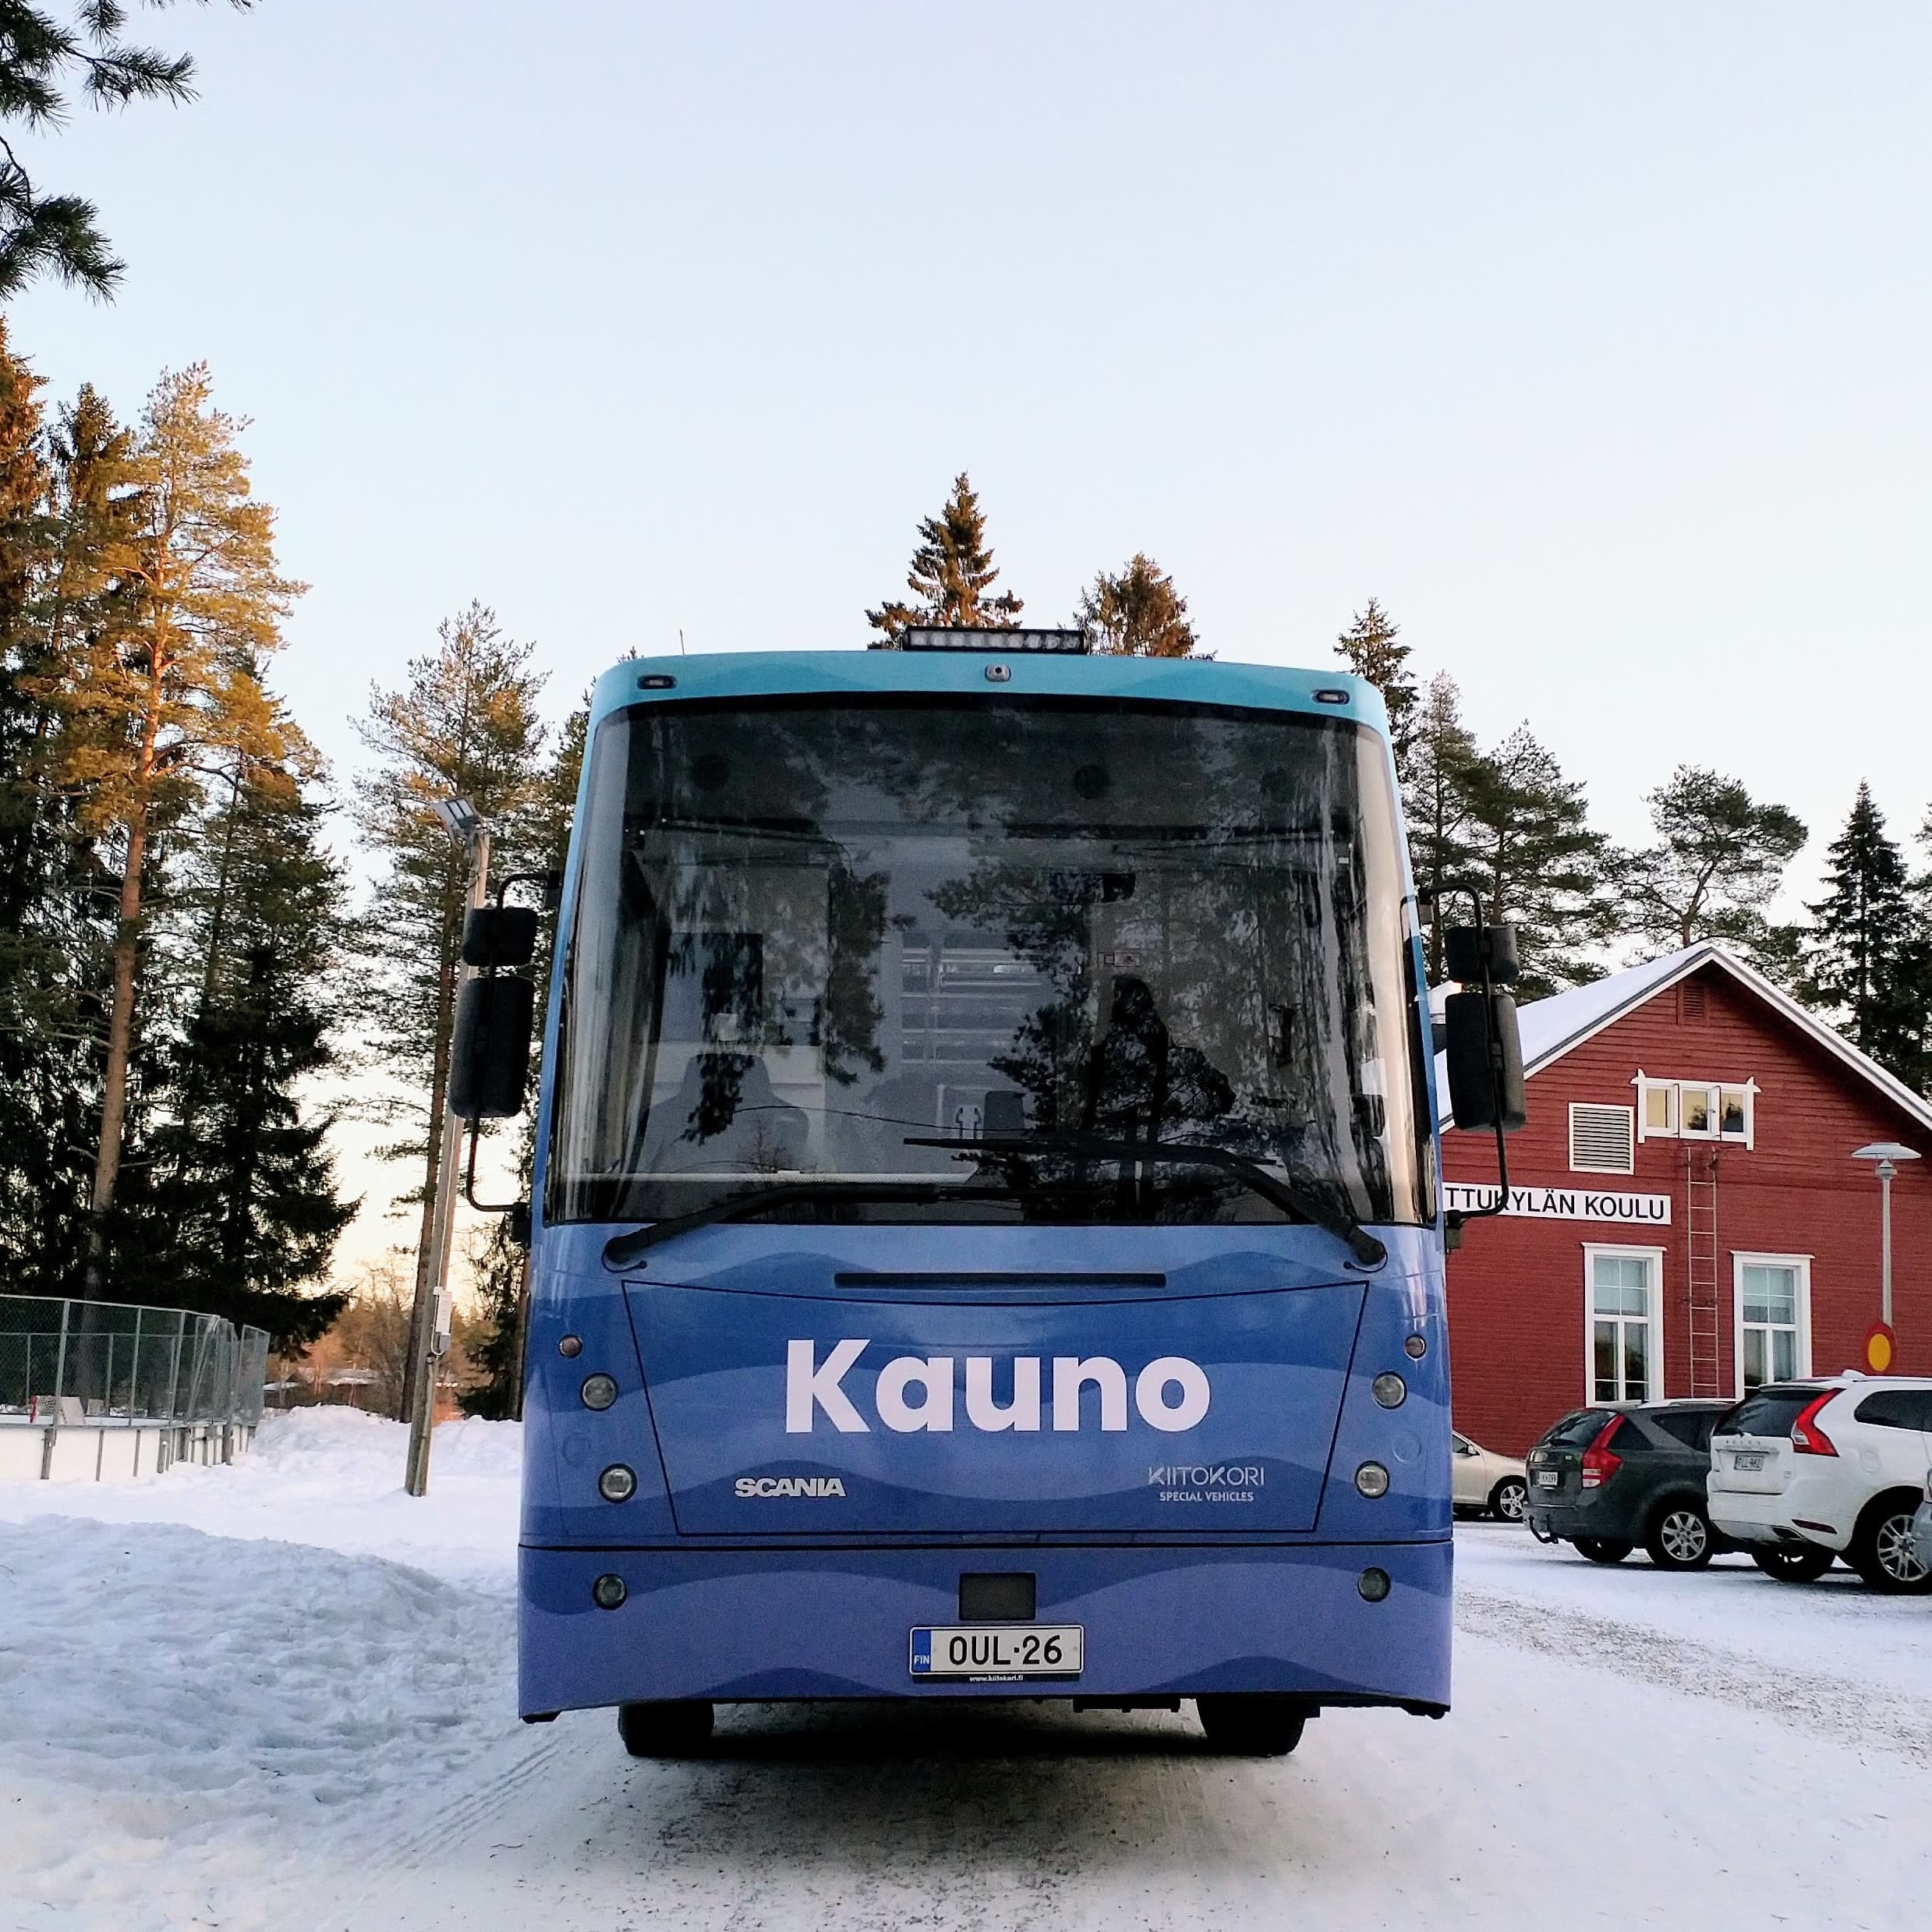 Oulun uusi kirjastoauto sai nimekseen Kauno